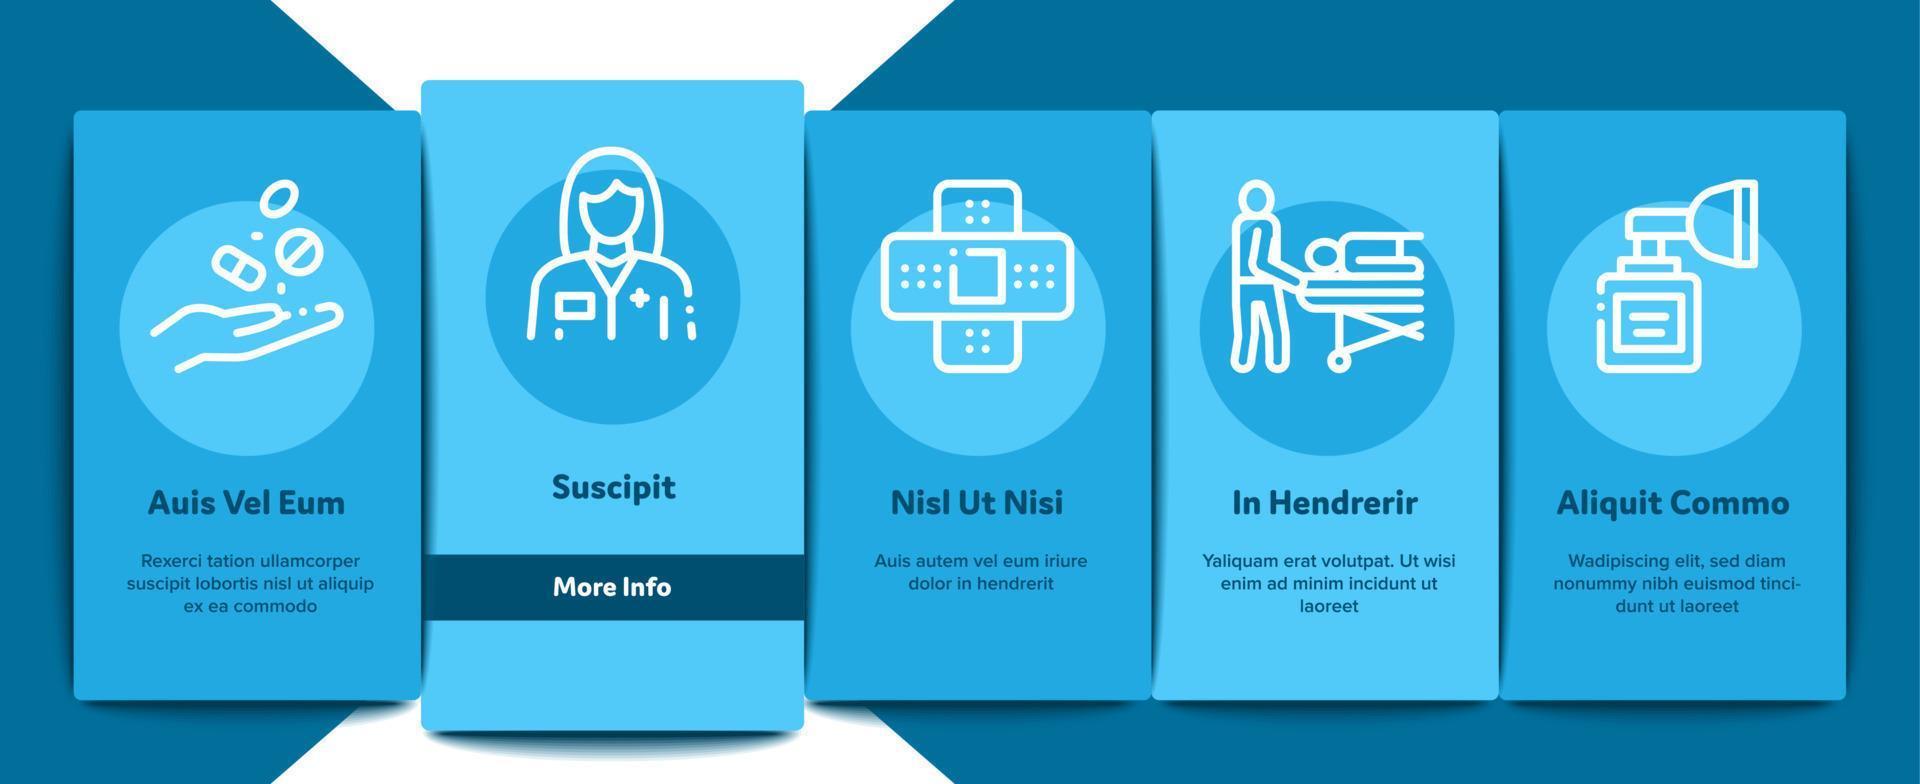 conjunto de iconos de elementos de incorporación de ayuda médica de enfermera vector